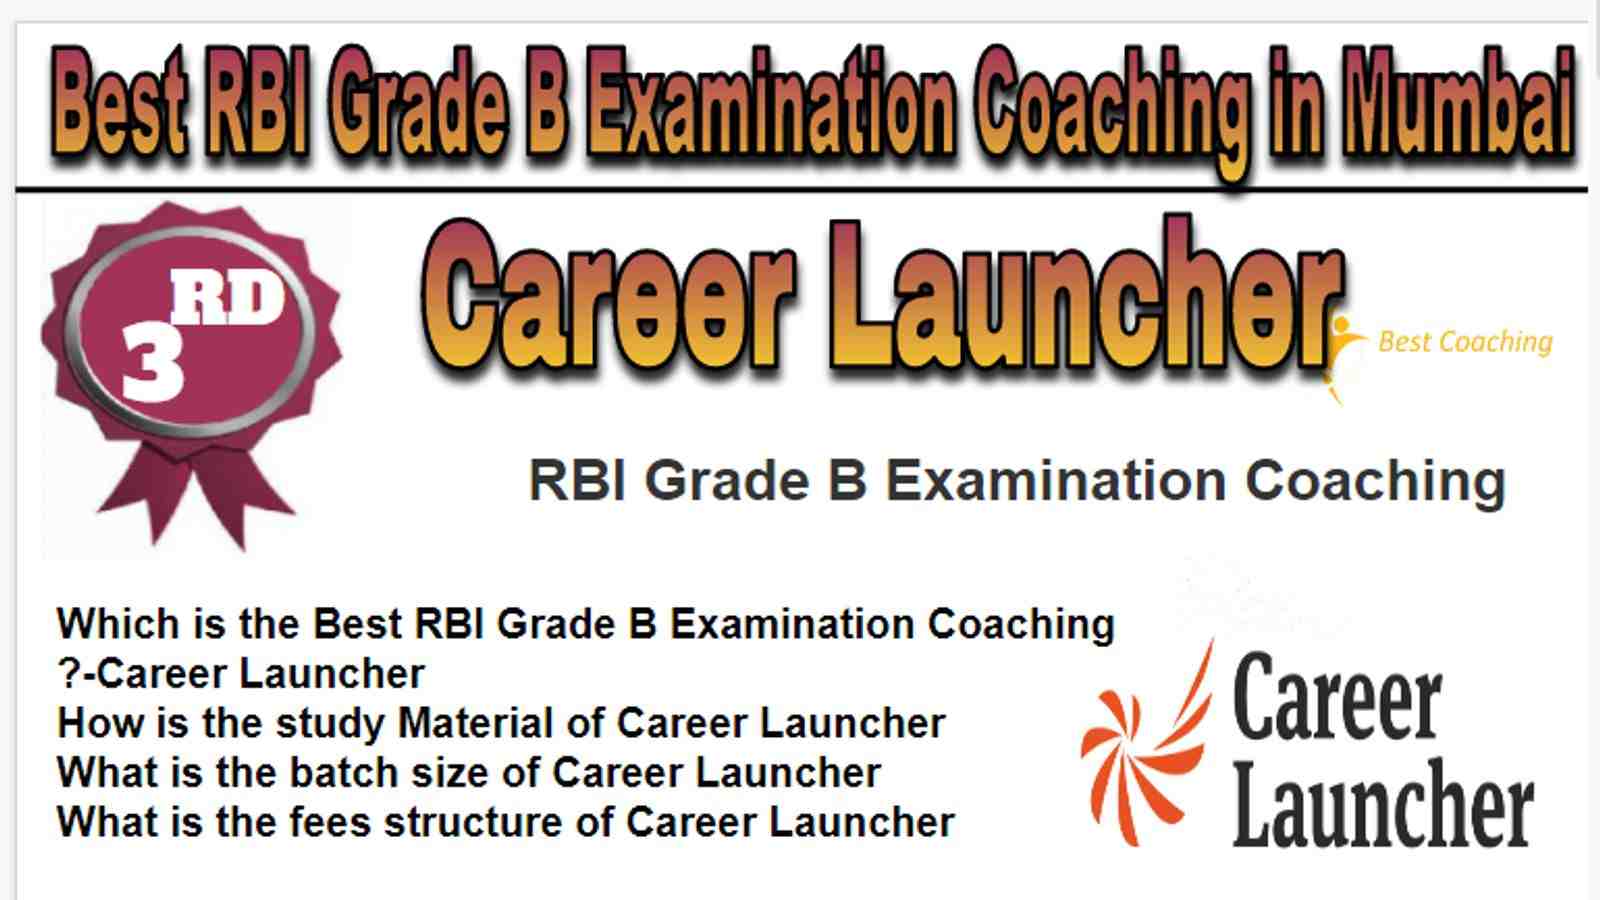 Rank 3 Best RBI Grade B Examination Coaching in Mumbai